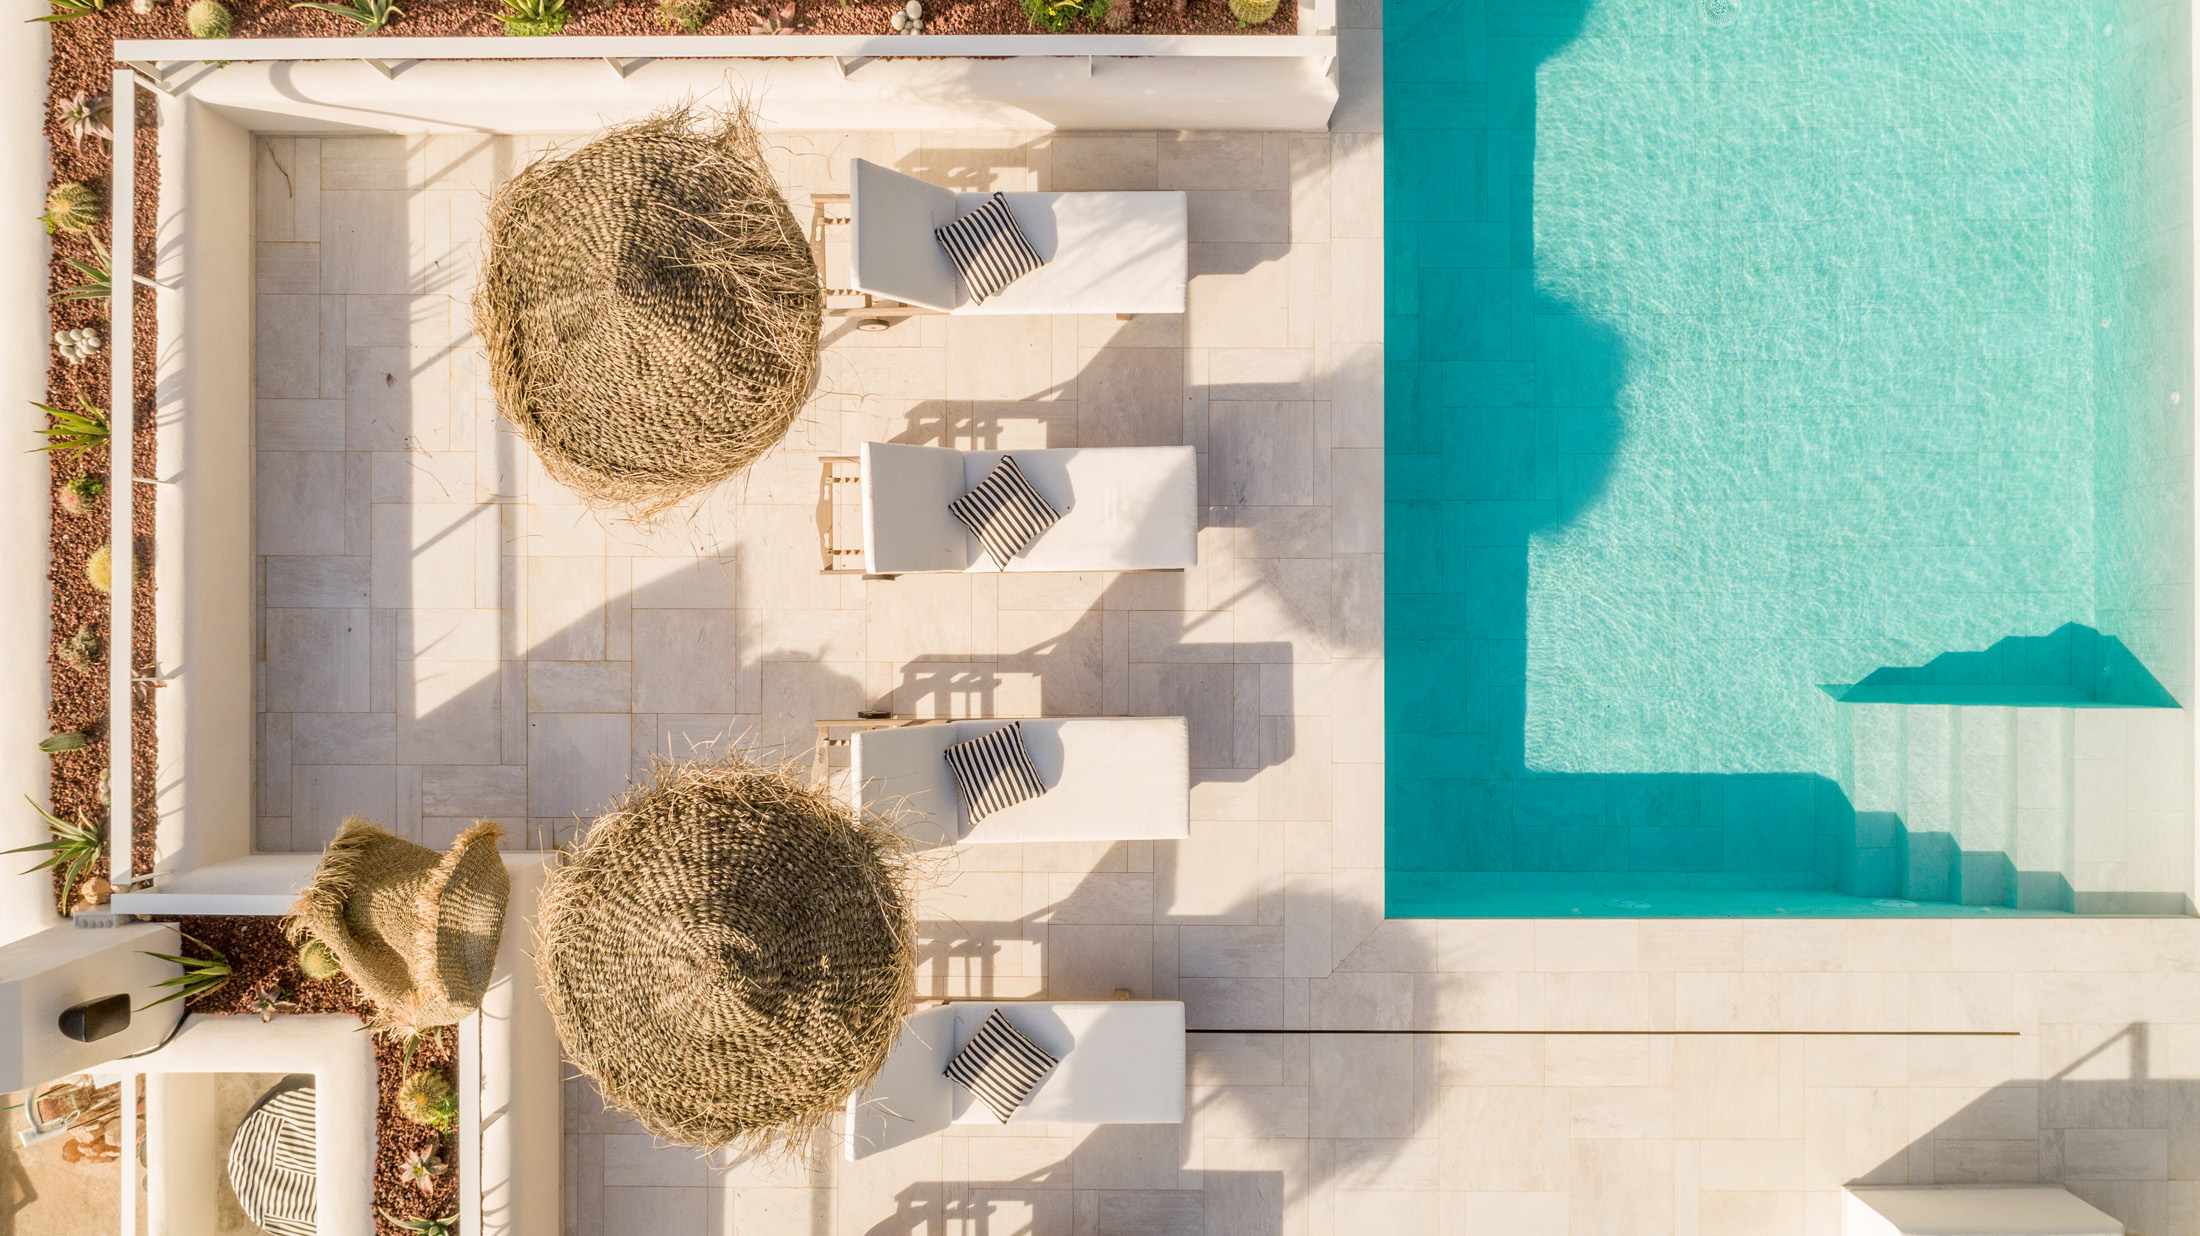 Drone Swimming Pool at La Verna Villa Domus Nova Ibiza